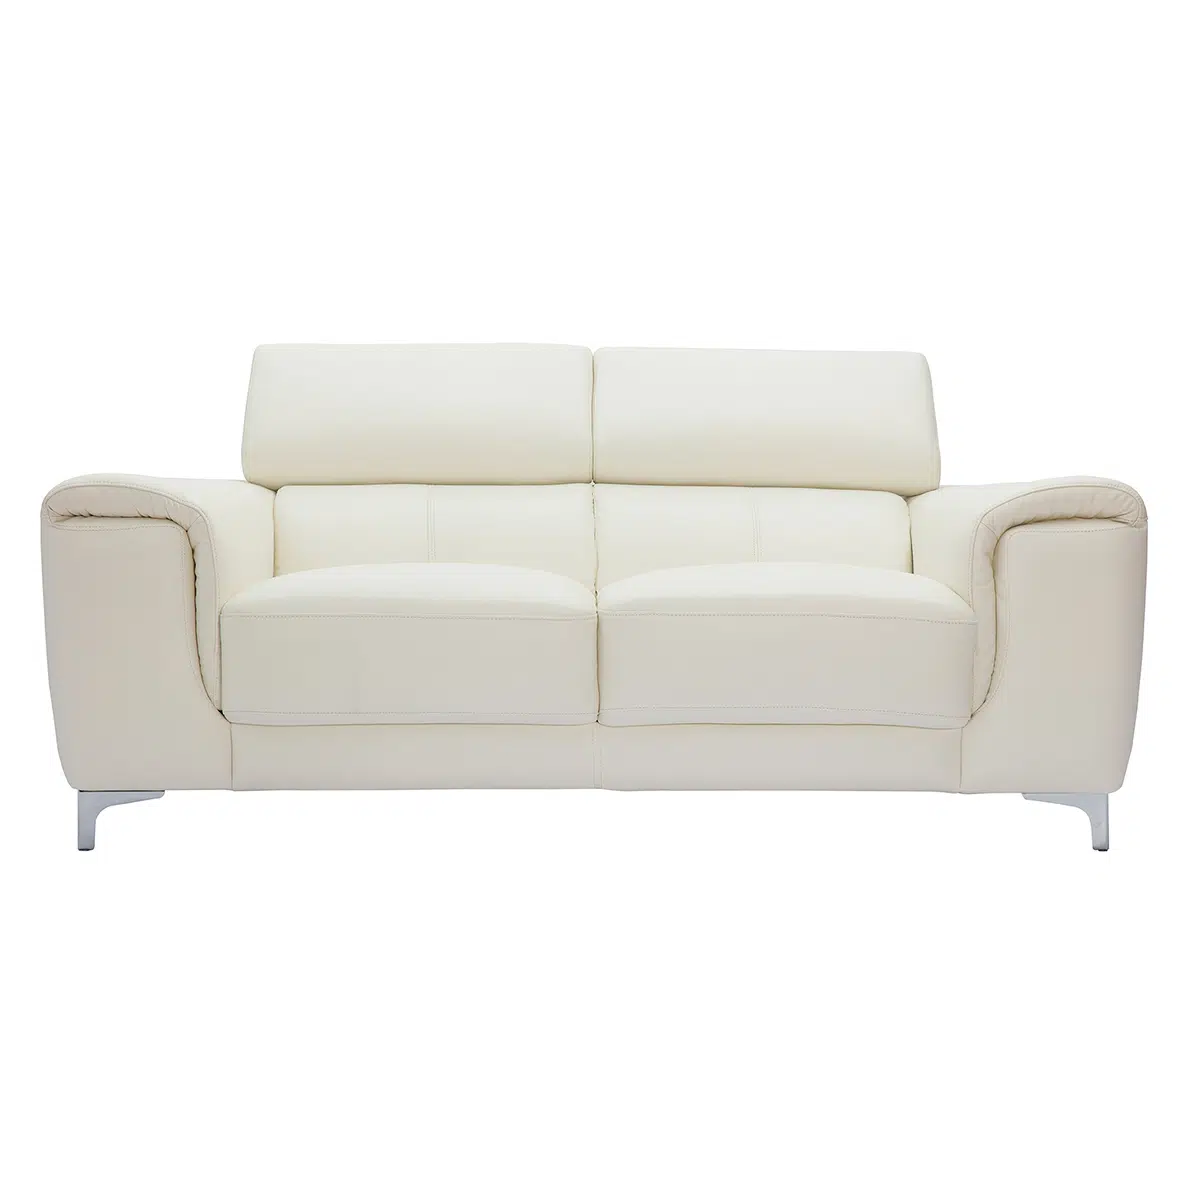 Canapé design avec têtières ajustables 2 places cuir blanc cassé et acier chromé NEVADA